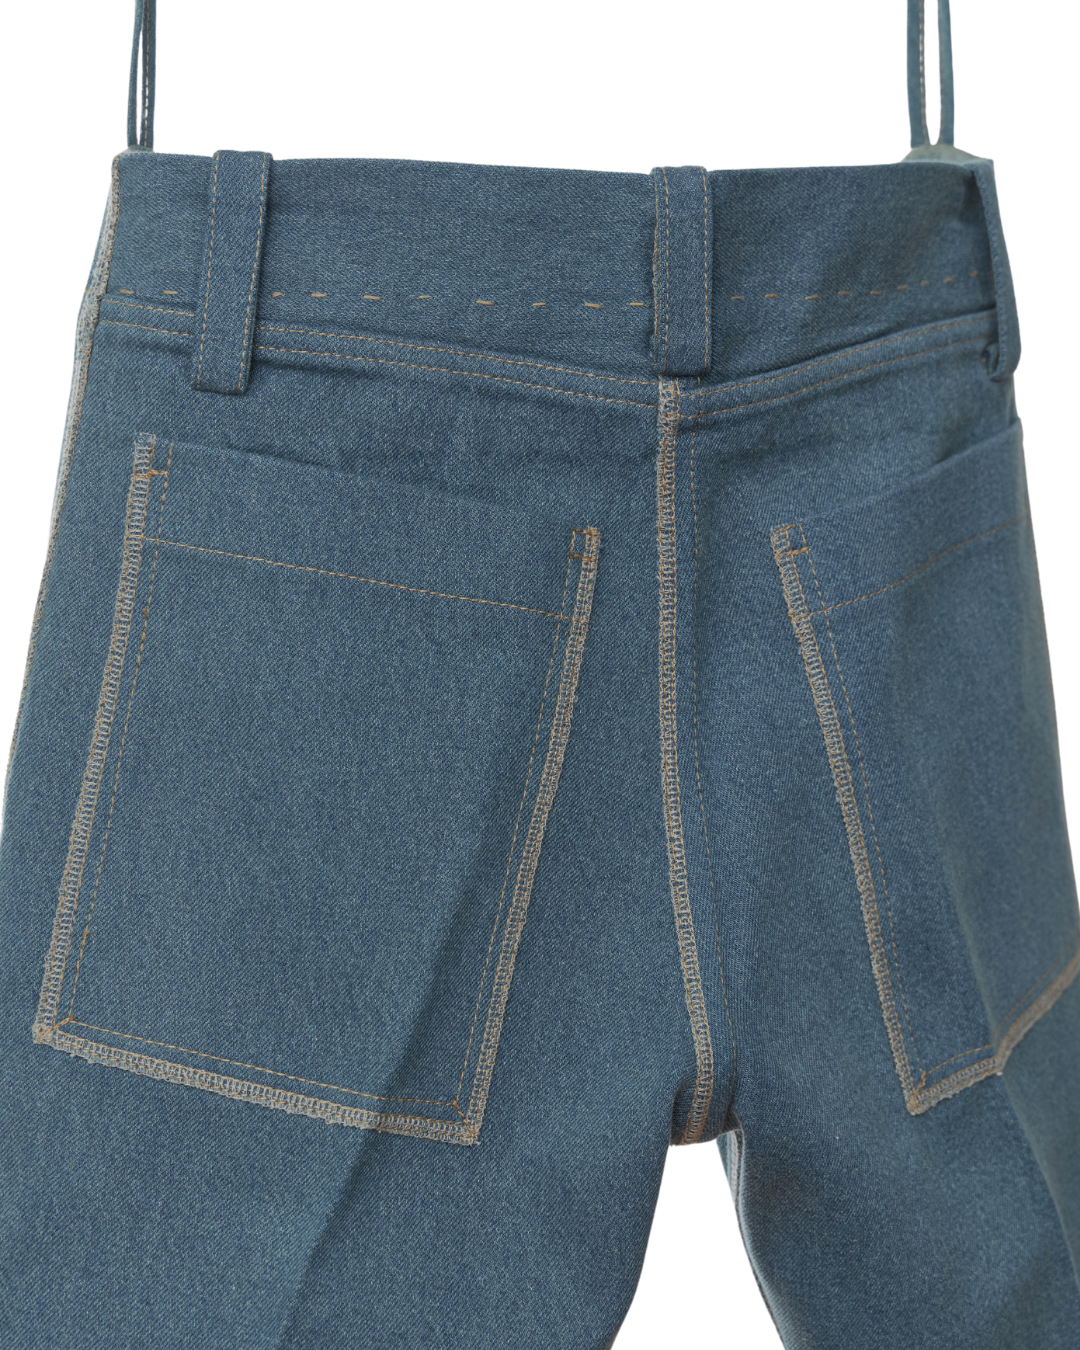 Cruz Classic Cuffed Jeans in Edition 1 ✳︎